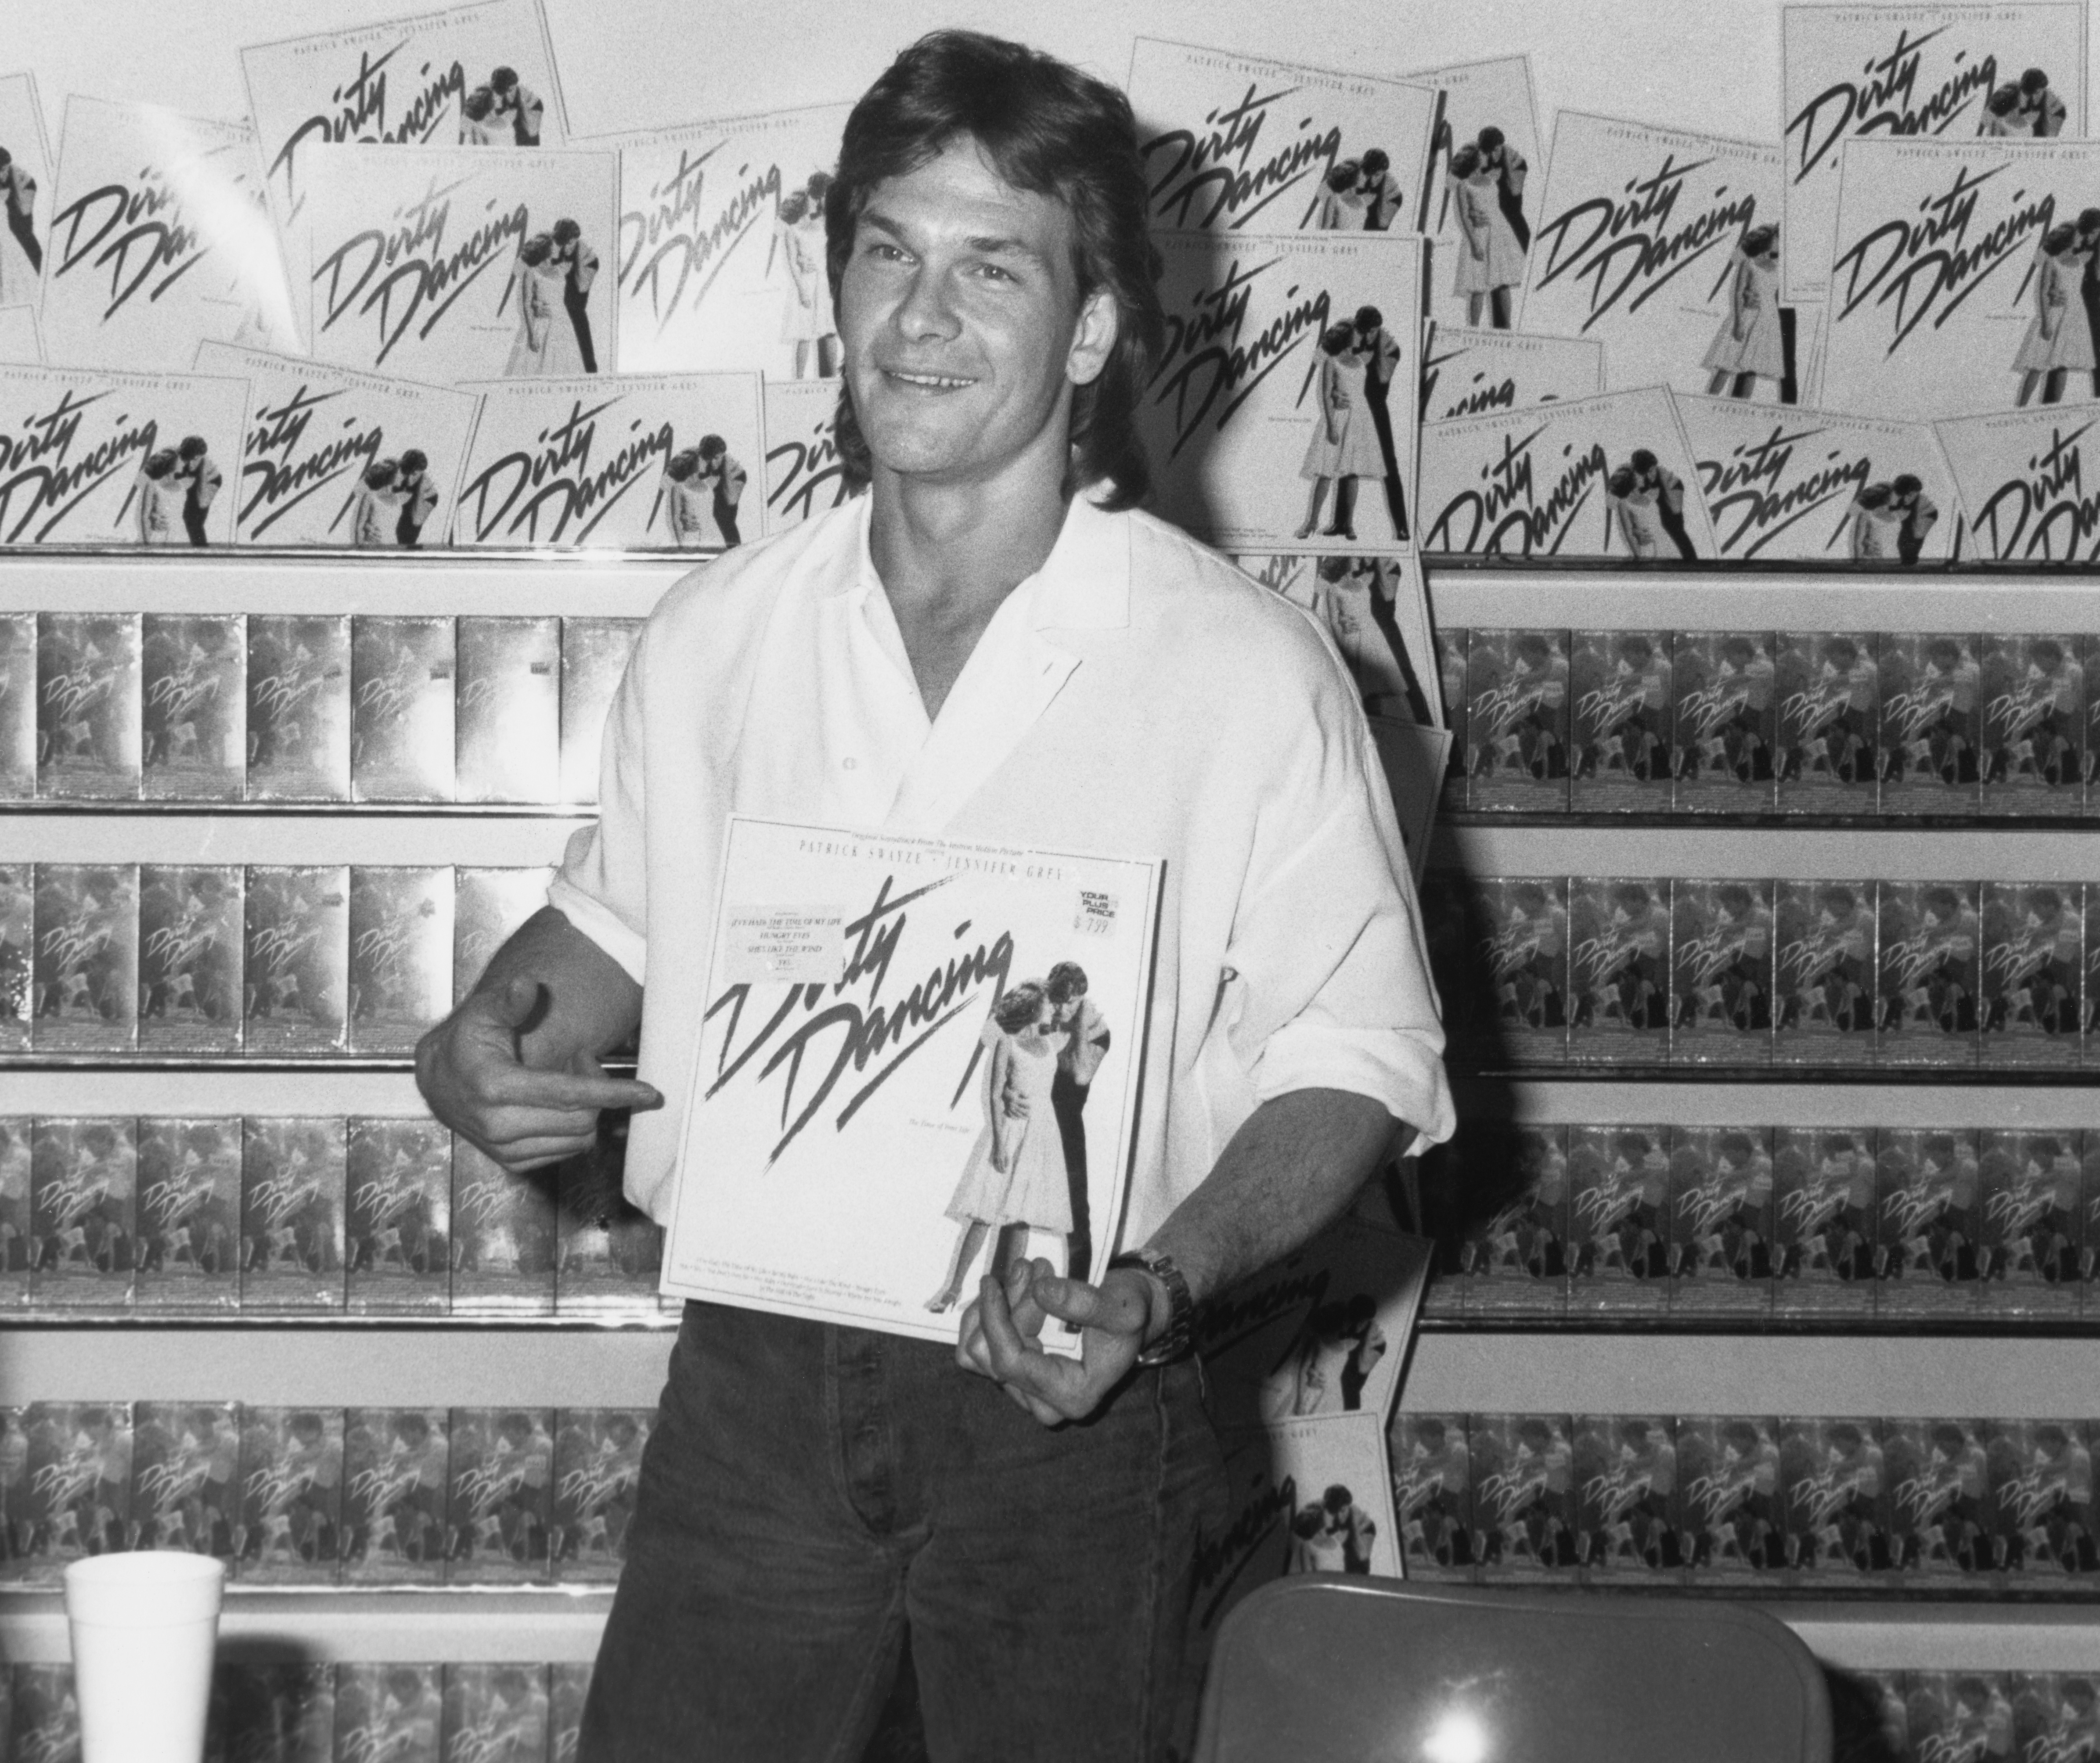 Patrick Swayze asiste a un acto promocional en el que firmó copias de la banda sonora de "Dirty Dancing", en una tienda de discos de Los Ángeles, California, 1988 | Foto: Getty Images